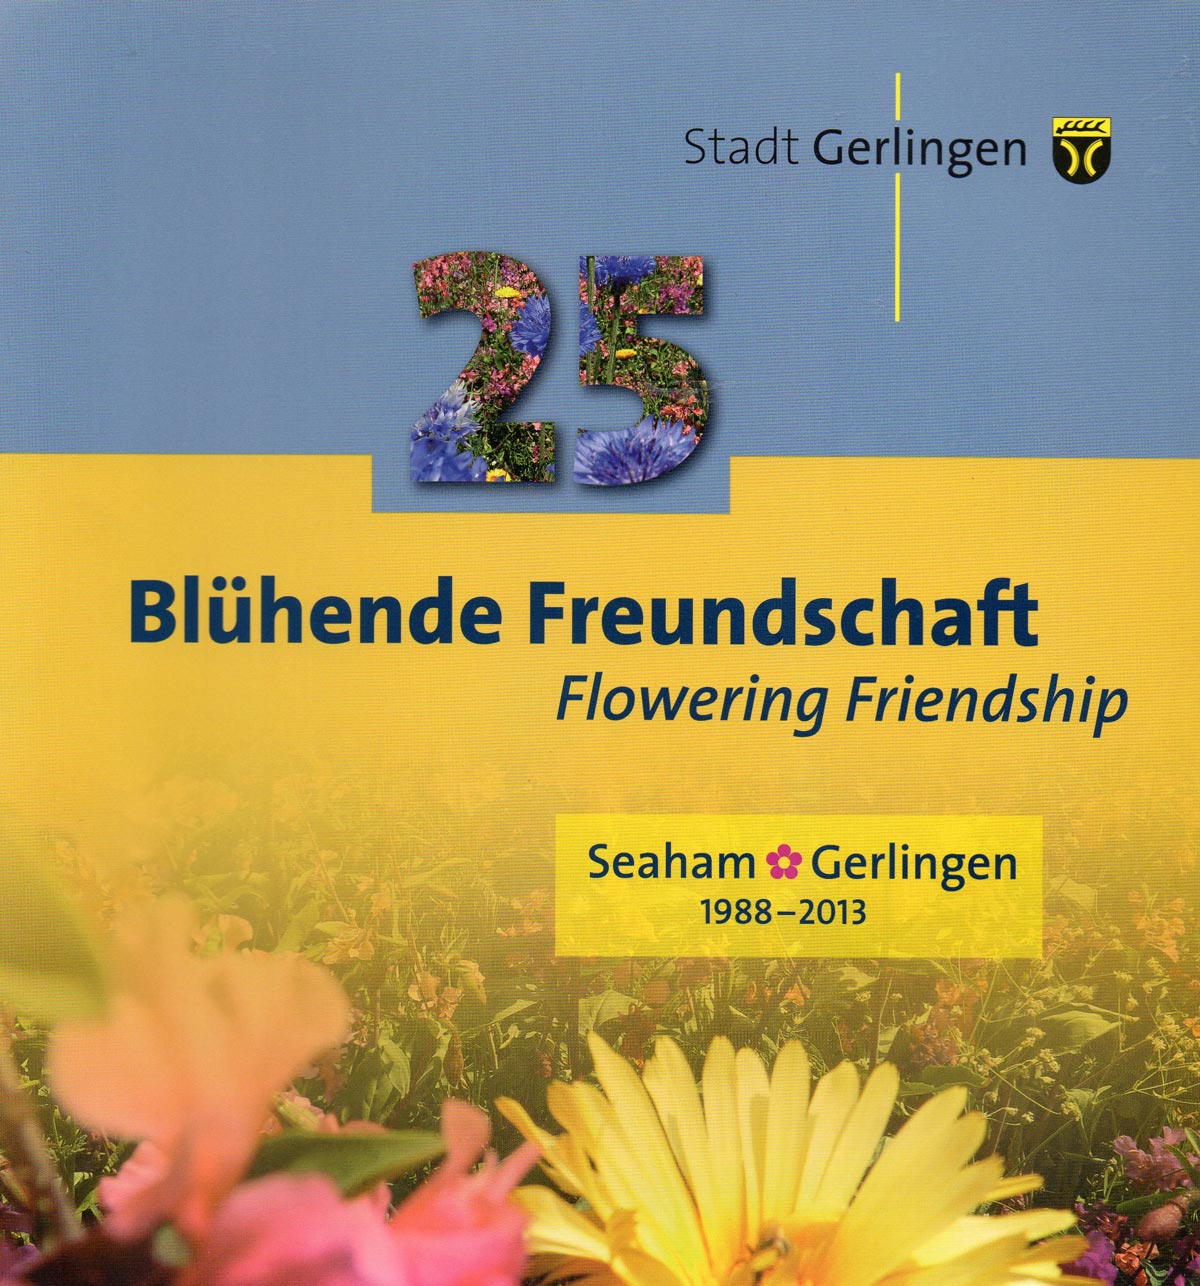 Seaham - Gerlingen: Blühende Freundschaft